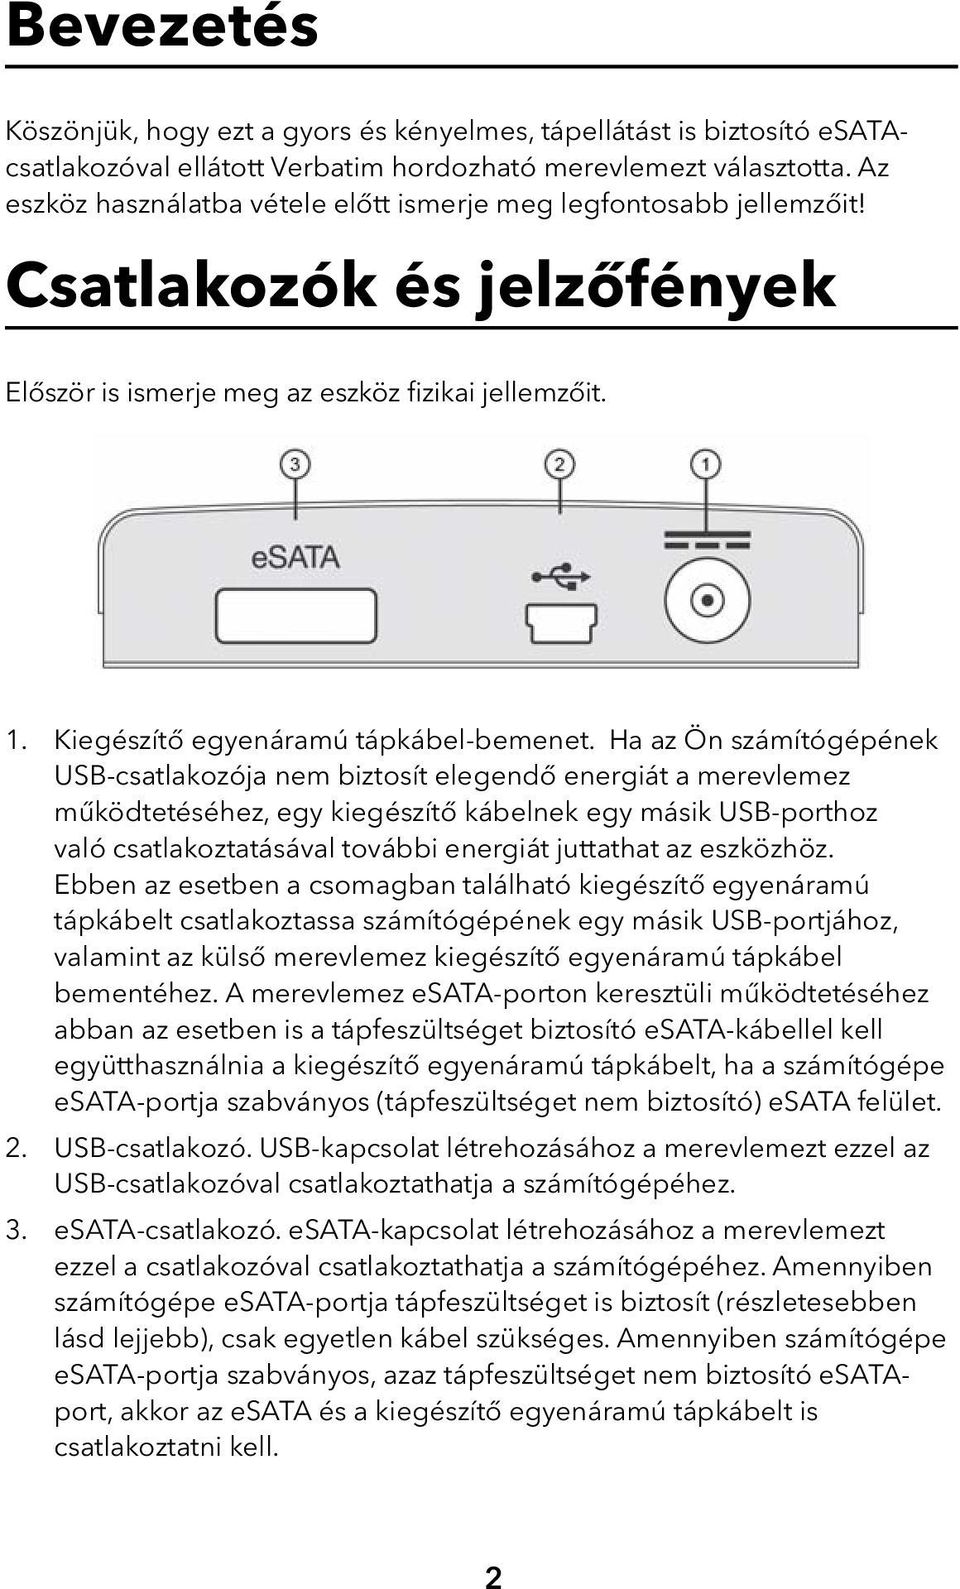 Ha az Ön számítógépének USB-csatlakozója nem biztosít elegendő energiát a merevlemez működtetéséhez, egy kiegészítő kábelnek egy másik USB-porthoz való csatlakoztatásával további energiát juttathat